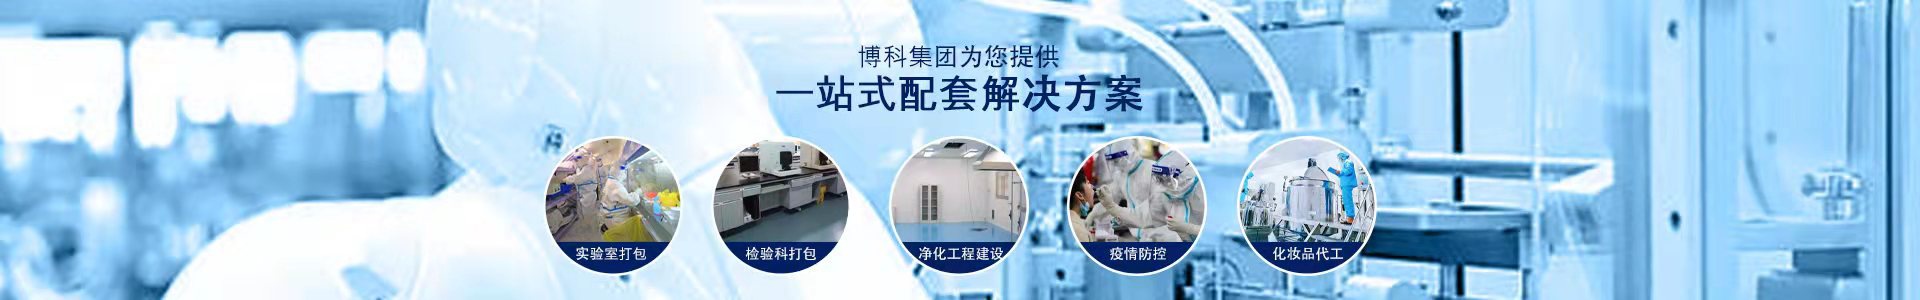 山东博科干细胞应用研究院有限公司-集研发、生产、经营于一体的高新技术企业